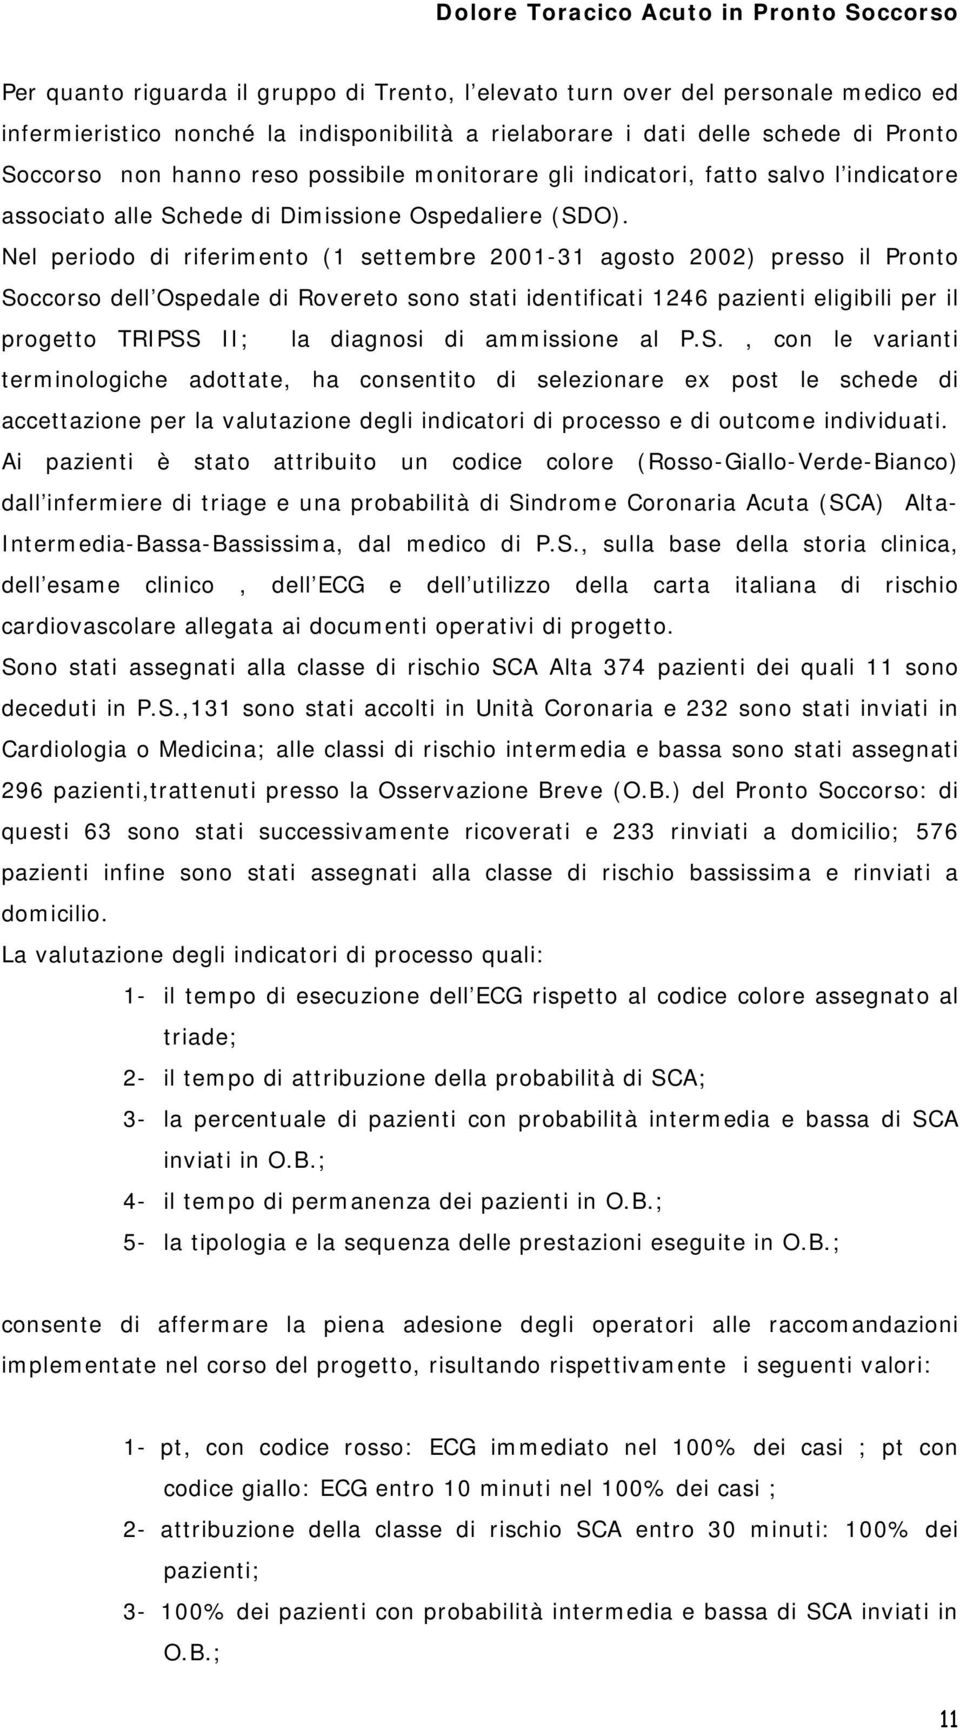 Nel periodo di riferimento (1 settembre 2001-31 agosto 2002) presso il Pronto Soccorso dell Ospedale di Rovereto sono stati identificati 1246 pazienti eligibili per il progetto TRIPSS II; la diagnosi